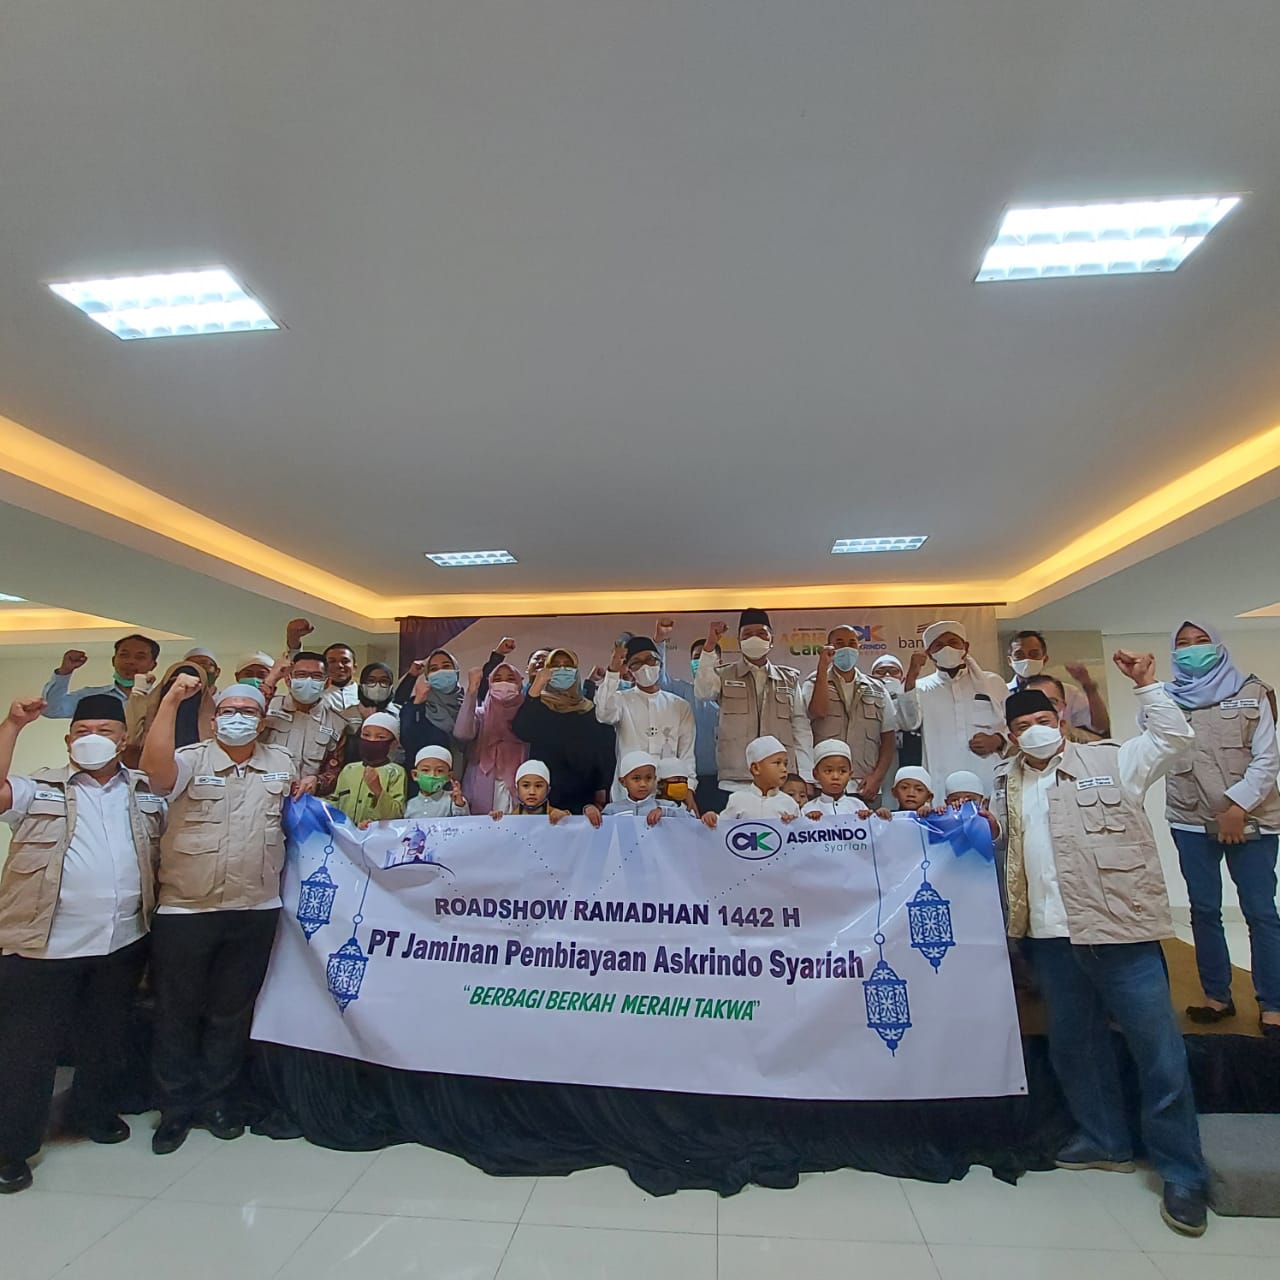 Roadshow Ramadhan Askrindo Syariah, Salurkan Bantuan Sosial di Tasikmalaya